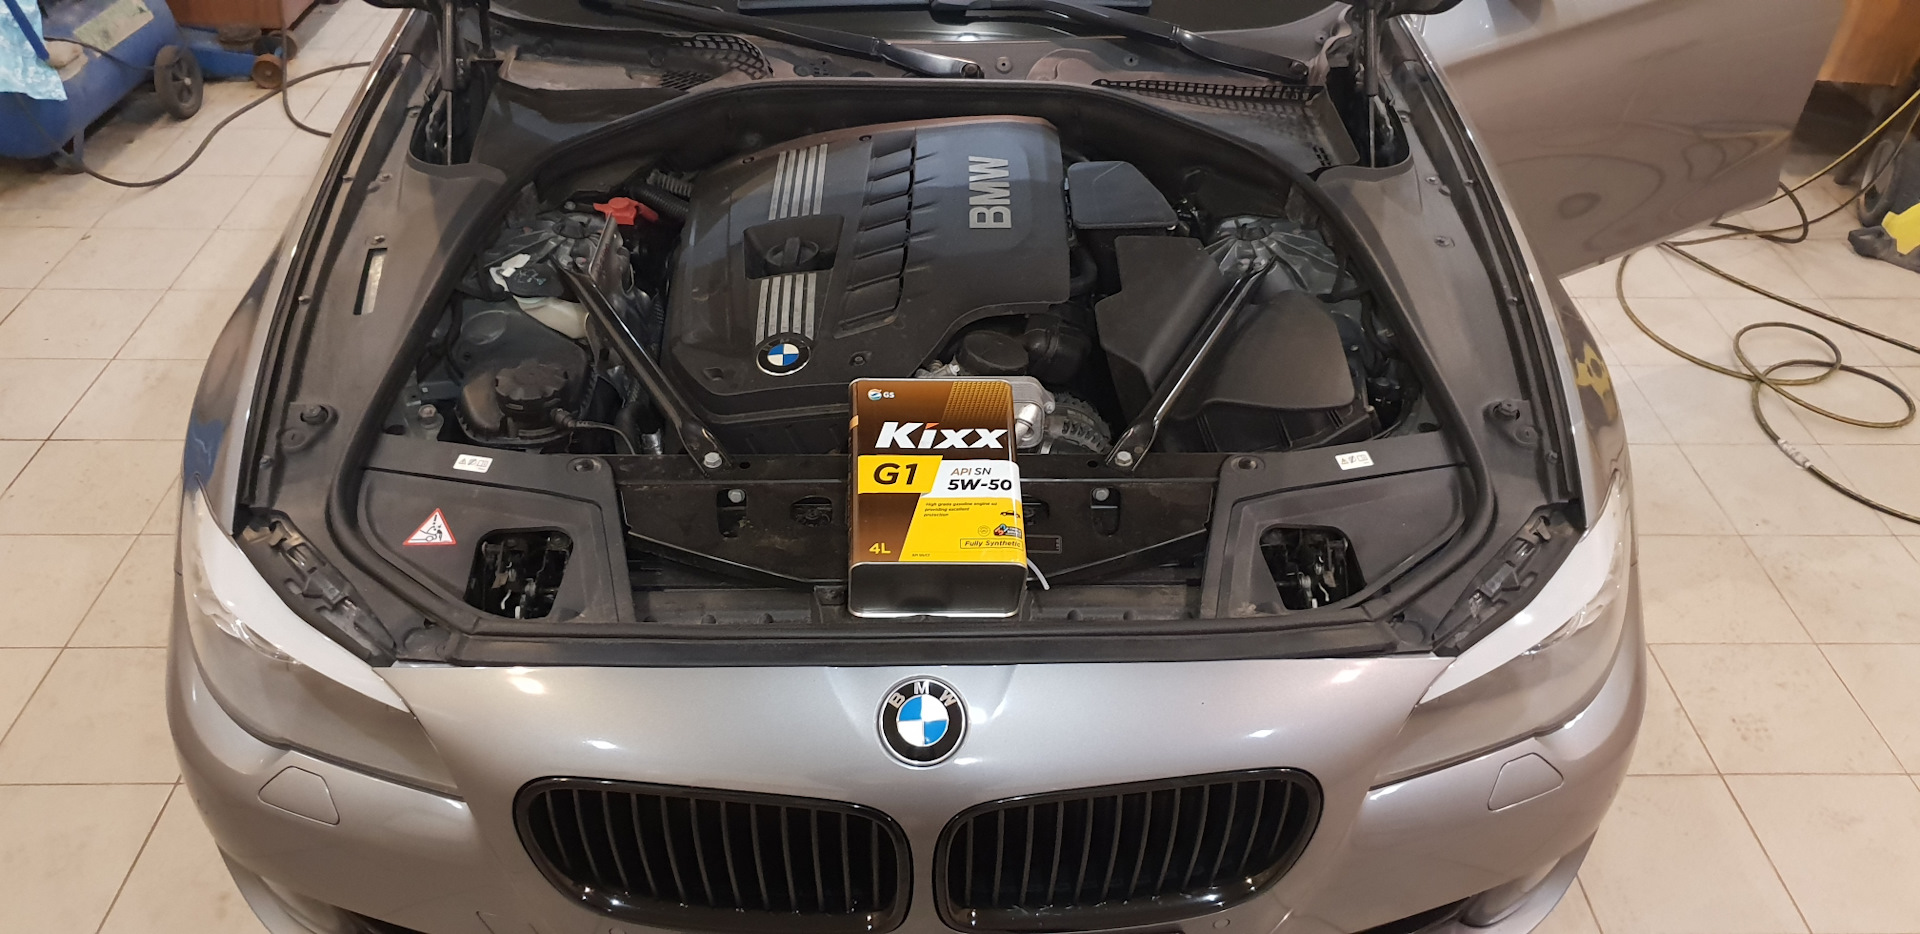 Выбор масла для двигателей BMW 5 E60 – важный момент